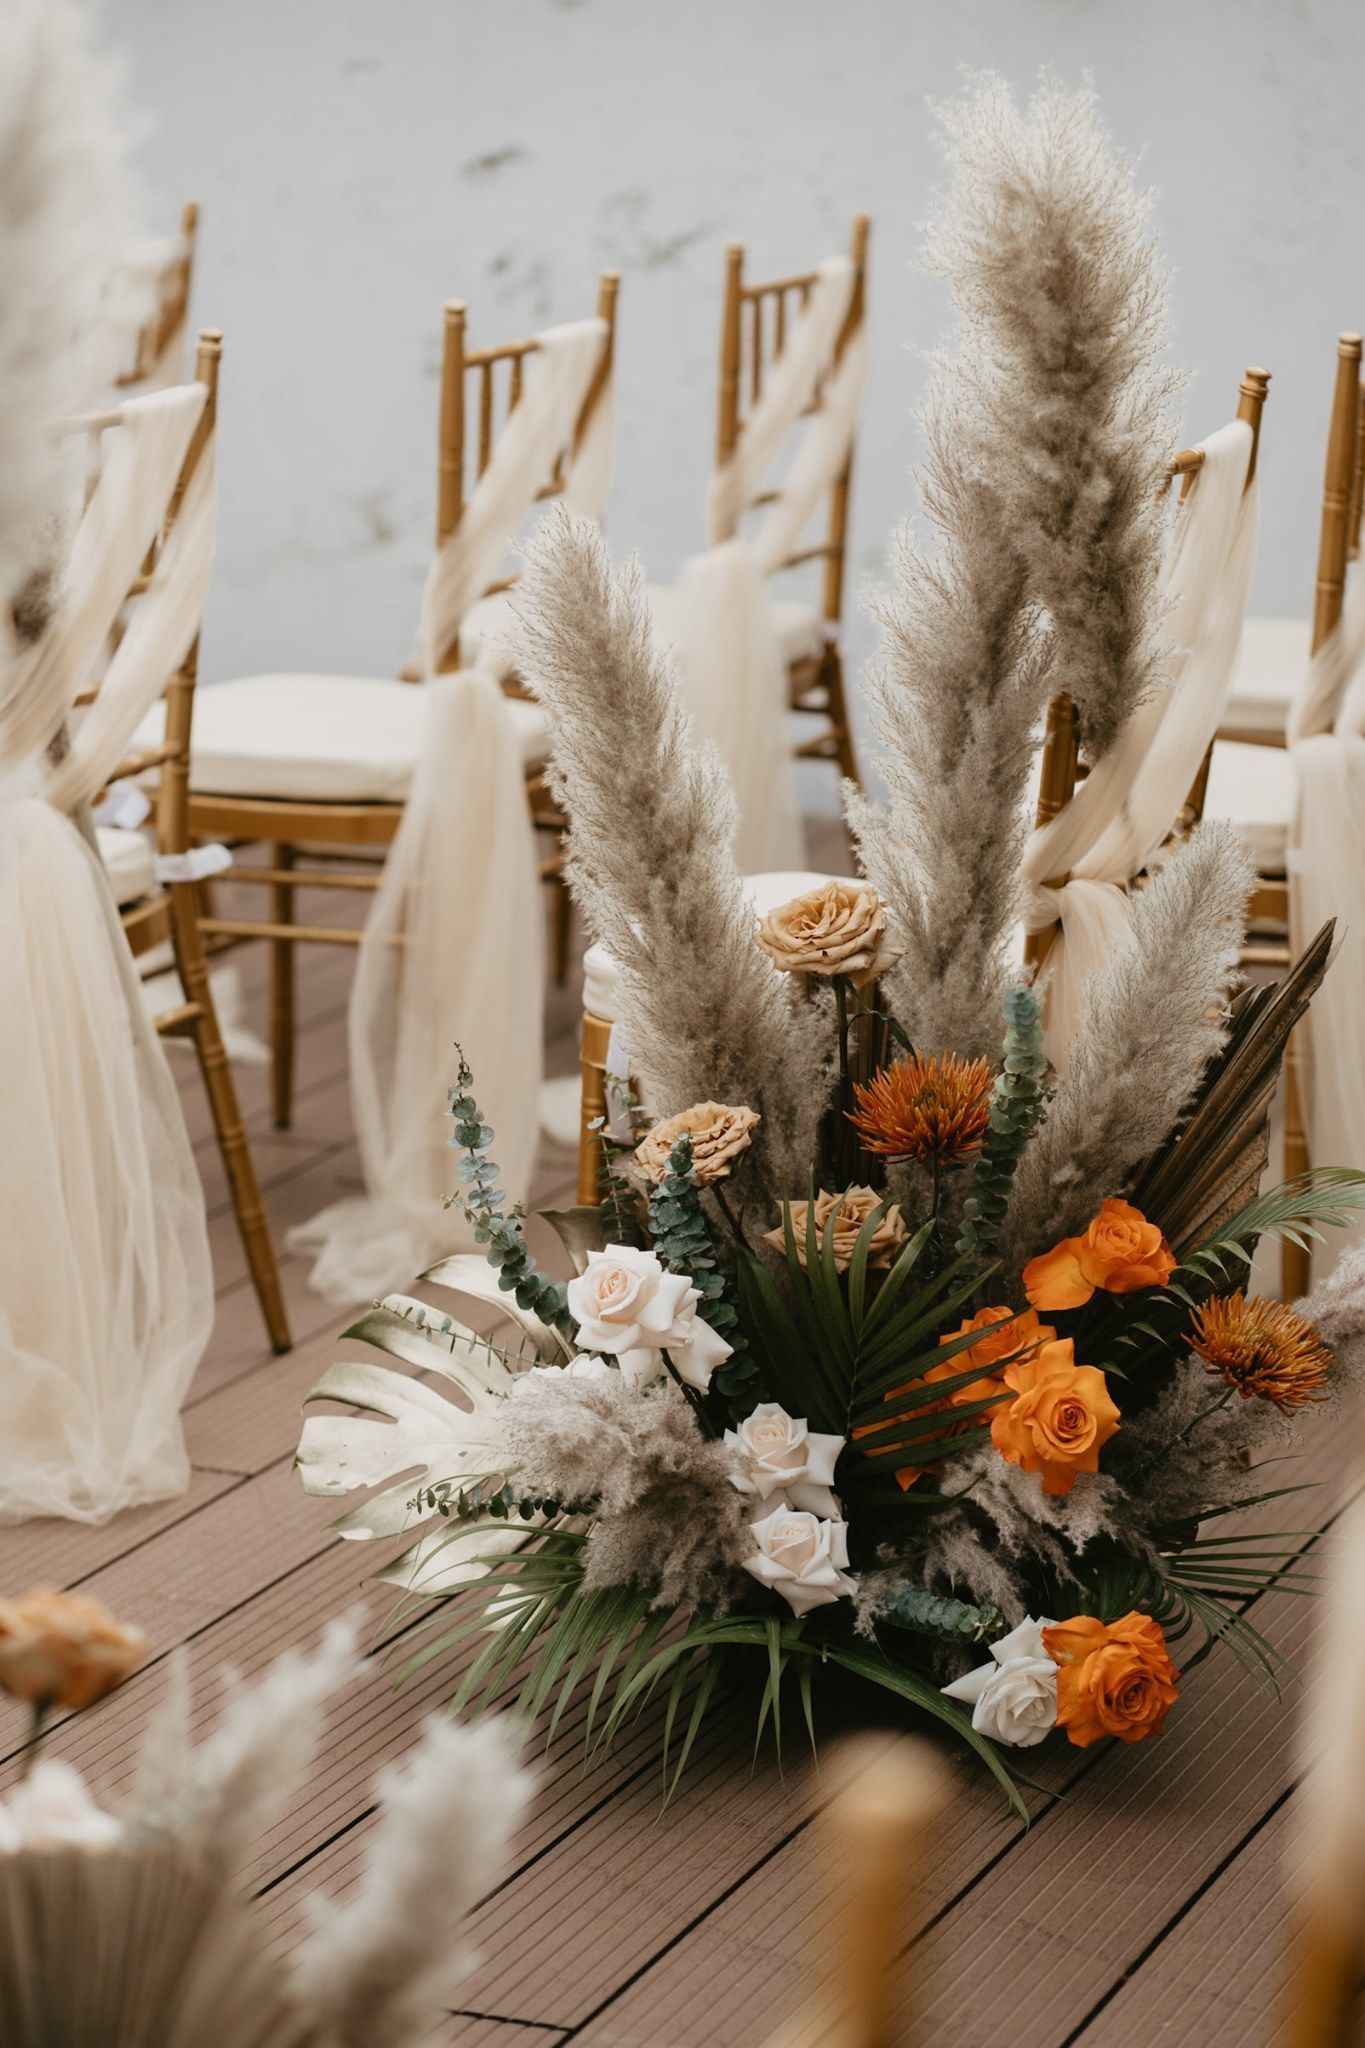 White Wedding Decor & More - Trắng tinh khôi ngày về chung đôi